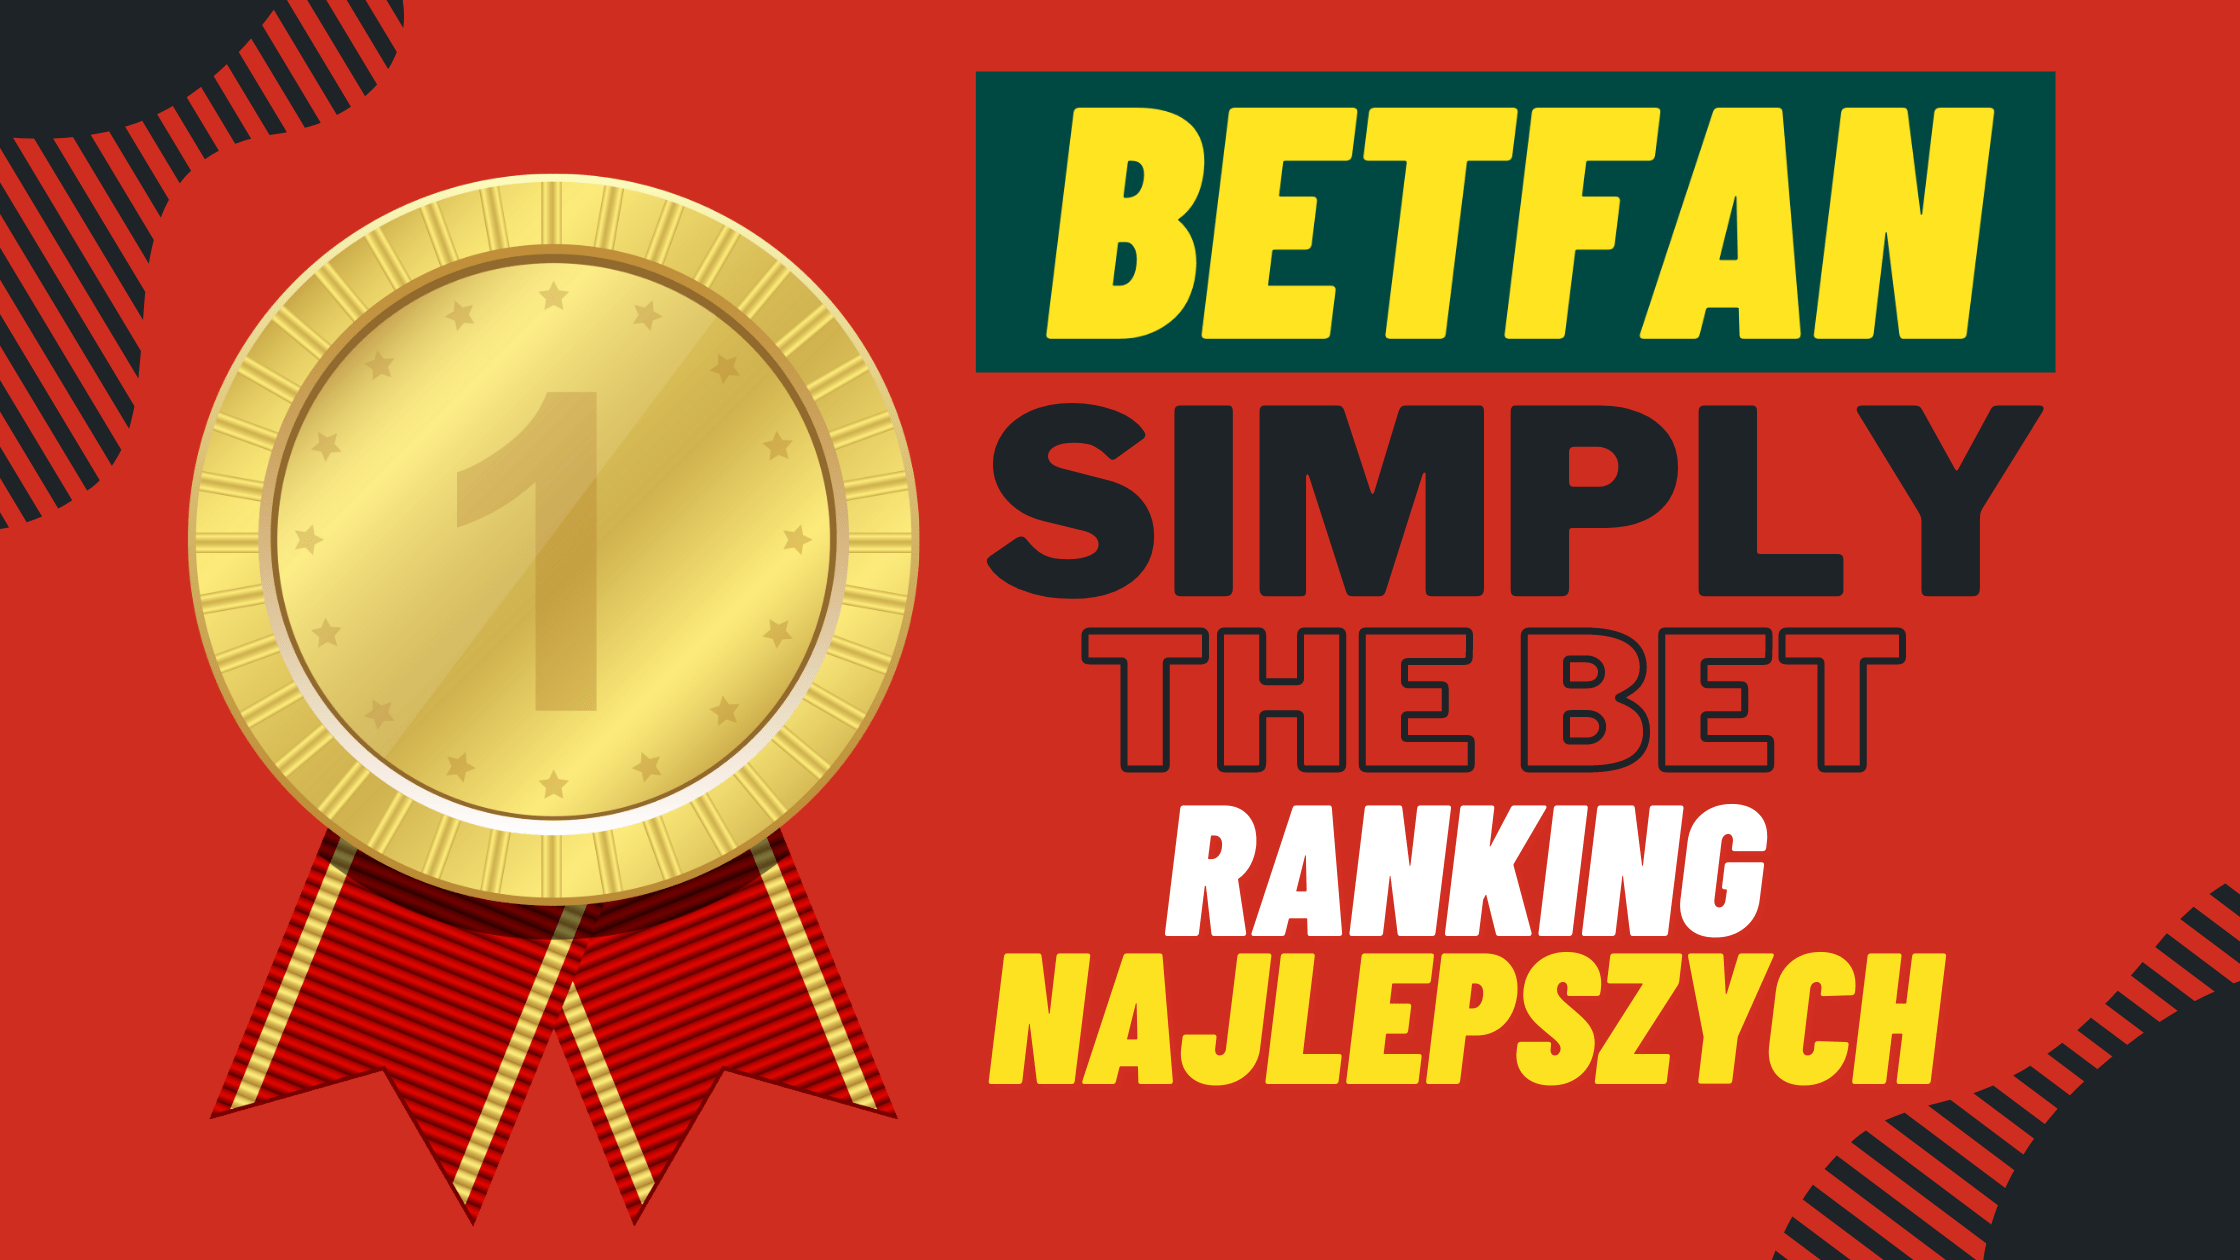 Promocja Betfan simply the bet - ranking najlepszych graczy